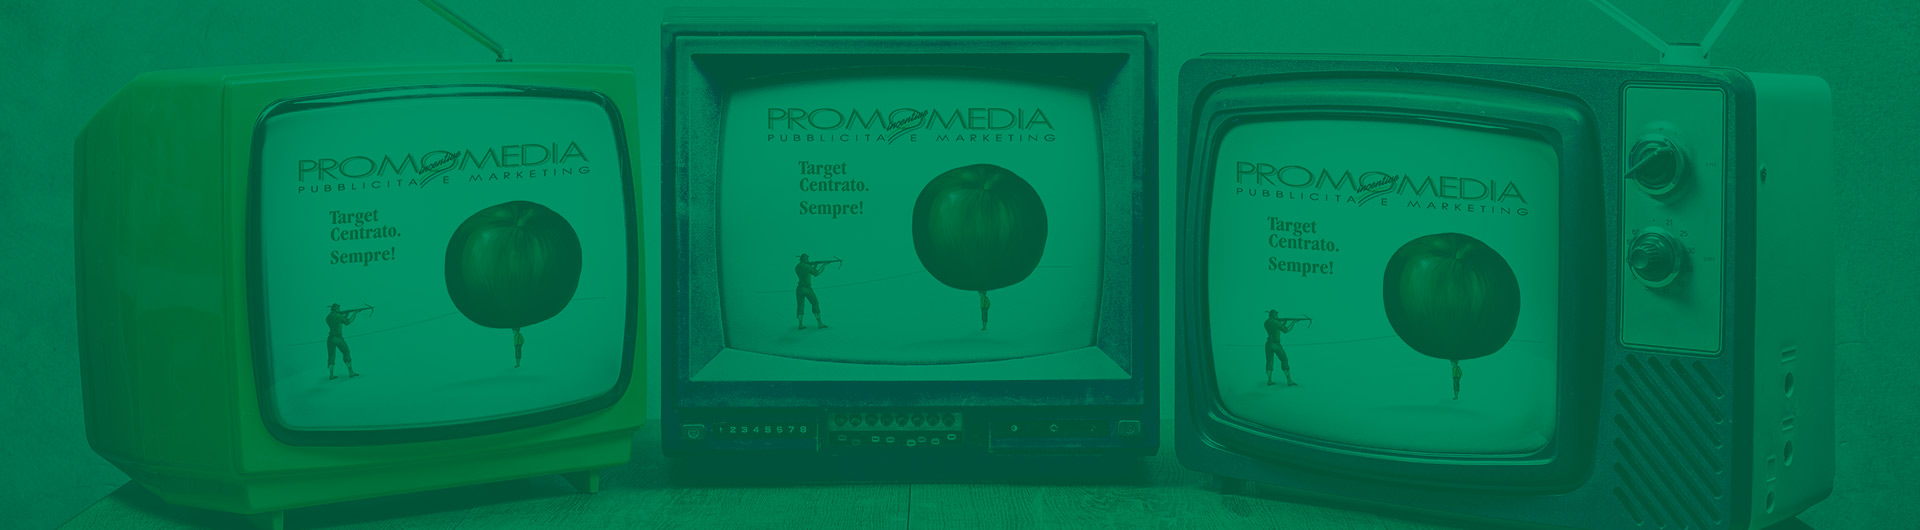 Promomedia logo on three vintage TV screens